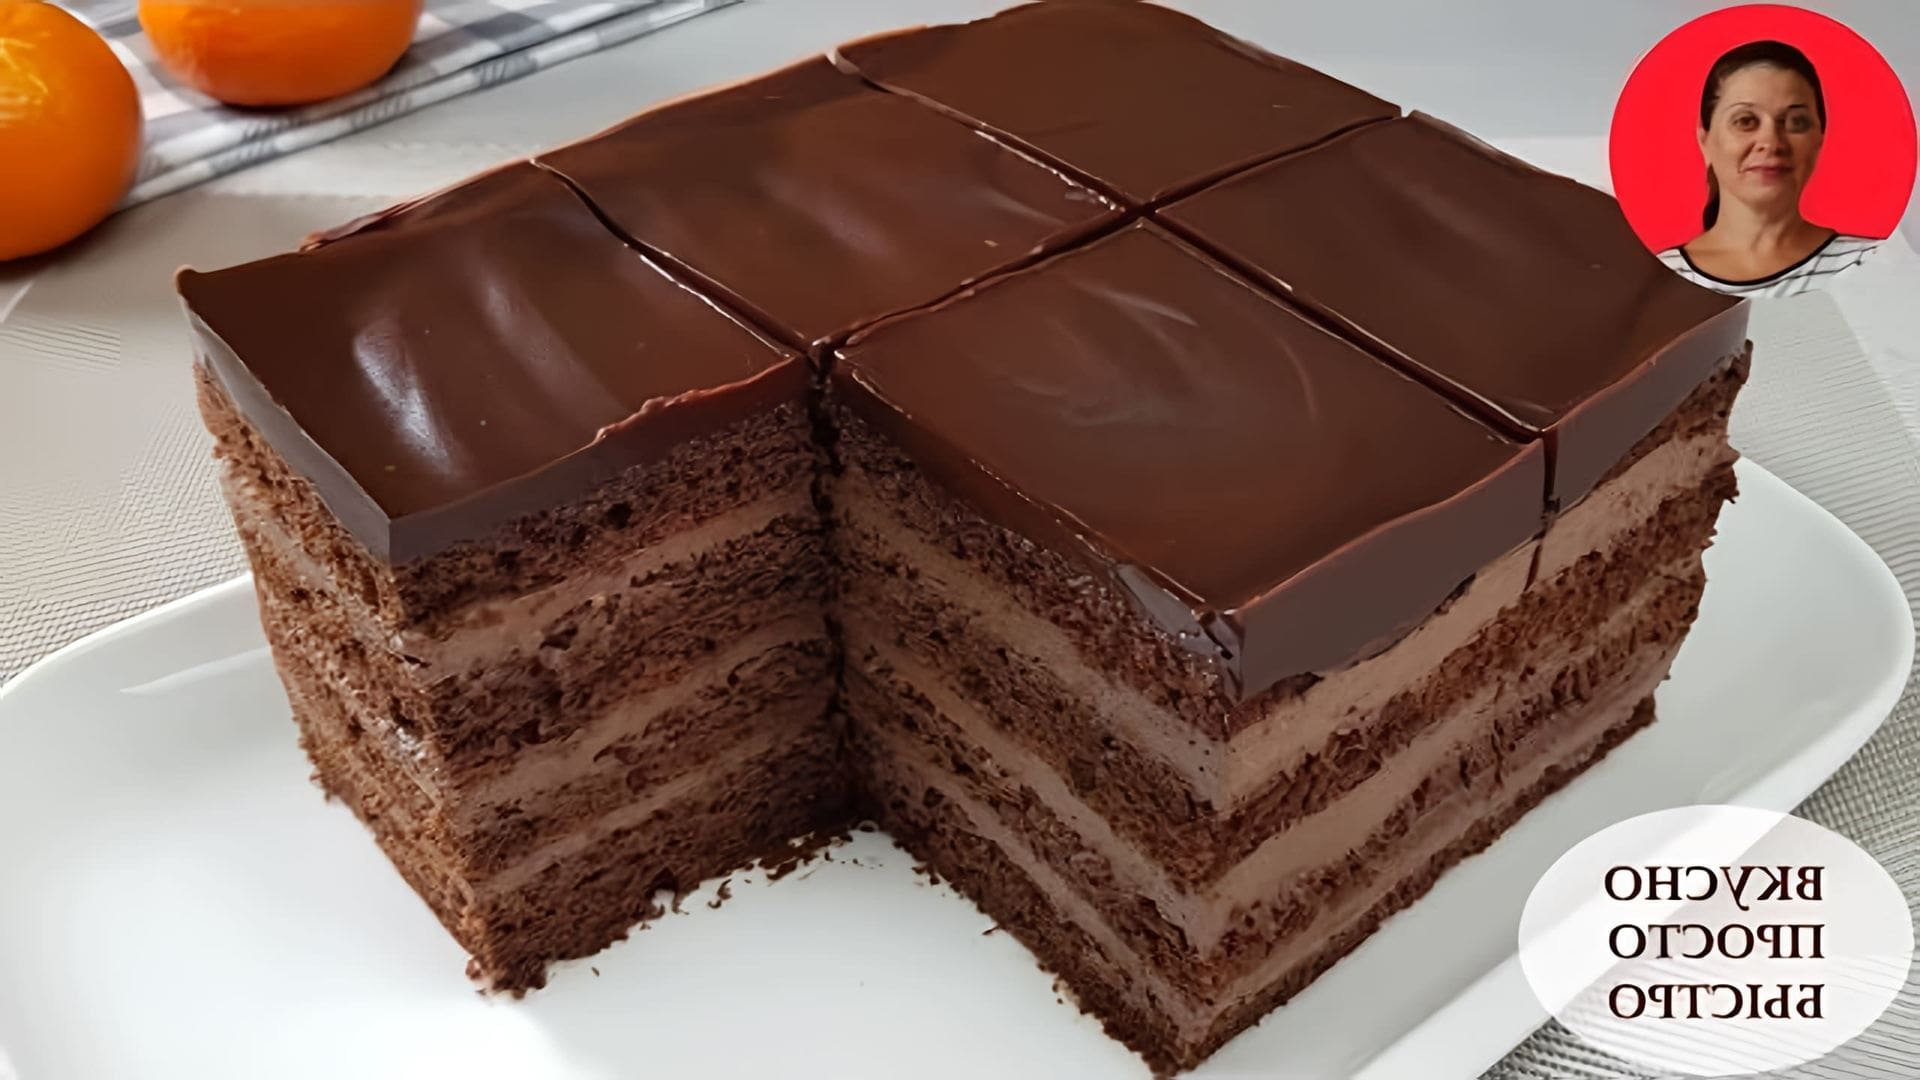 Видео рецепт быстрого и простого шоколадного торта, который высокий и красивый с насыщенным шоколадным вкусом